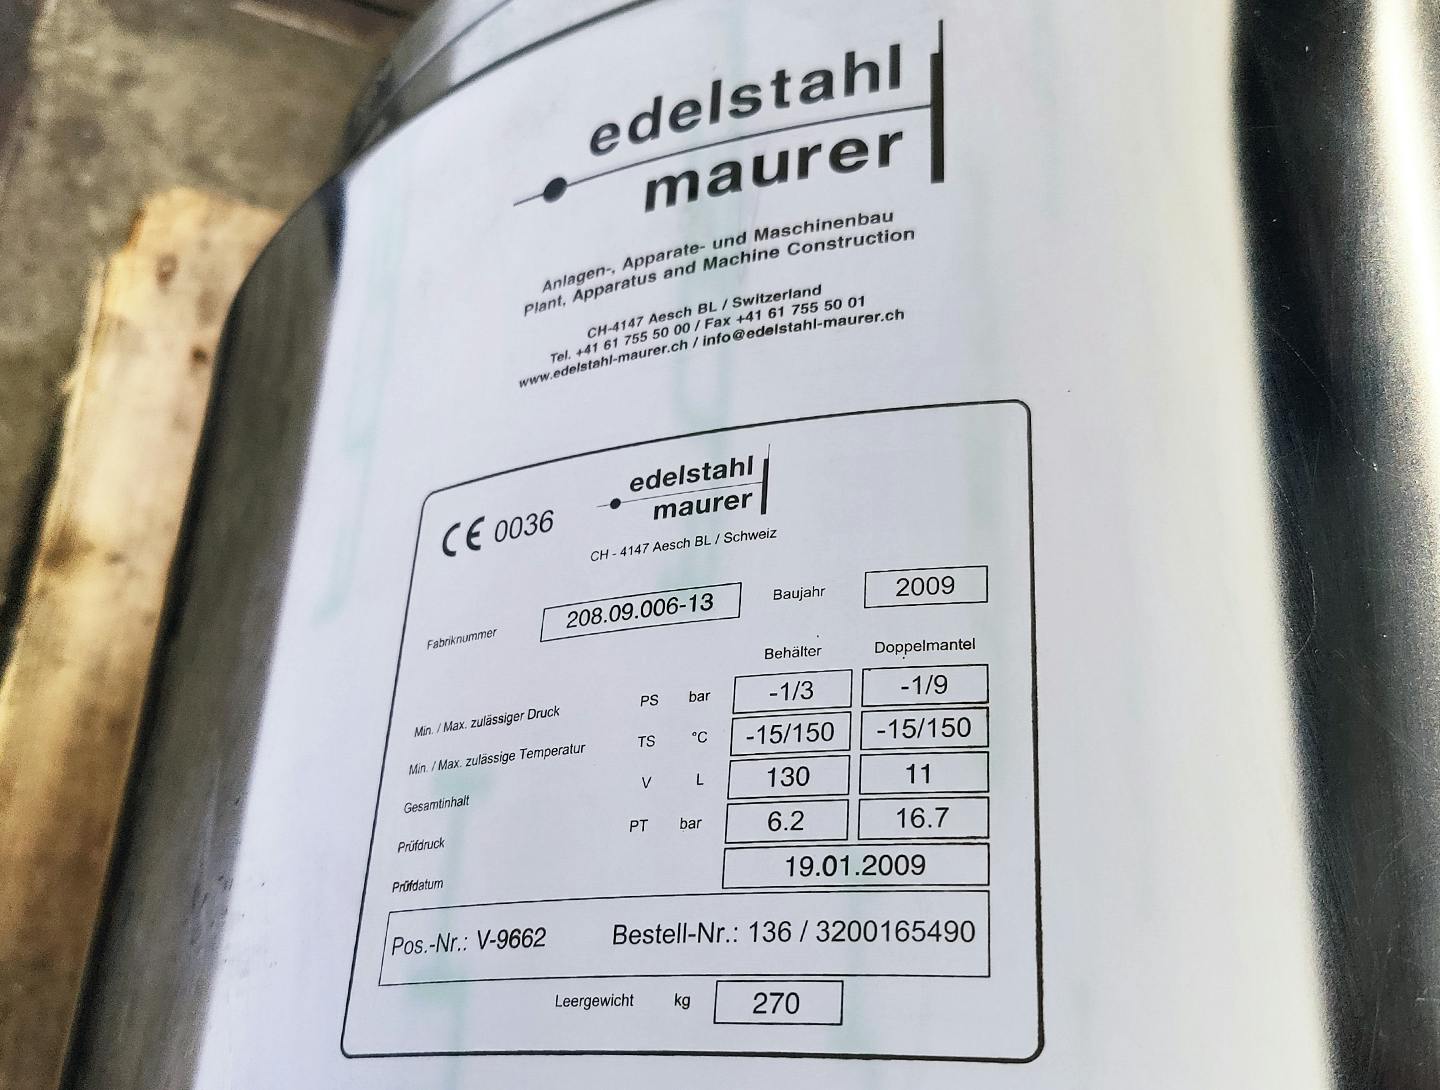 Edelstahl Maurer 130 Ltr. - Mirror-Polished Fraction Collector (Pharma Design) - Reactor de aço inoxidável - image 10